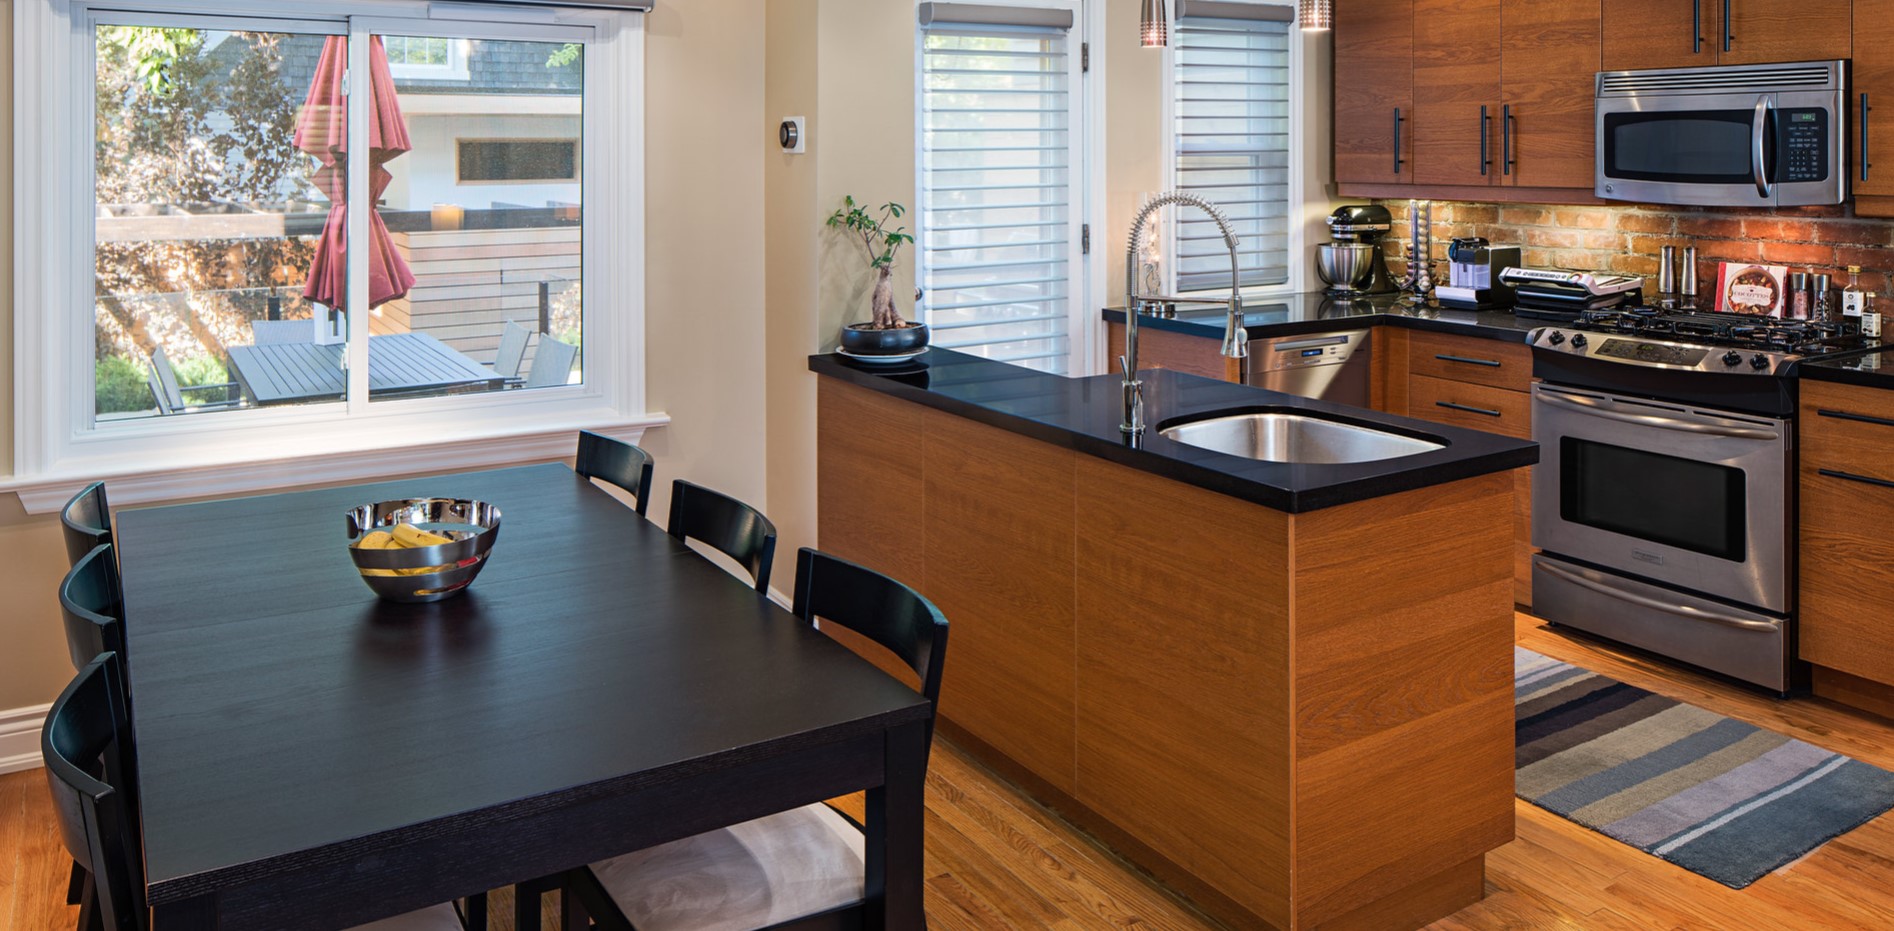 Американская кухня обычно совмещается со столовой и гостиной для визуального расширения пространства